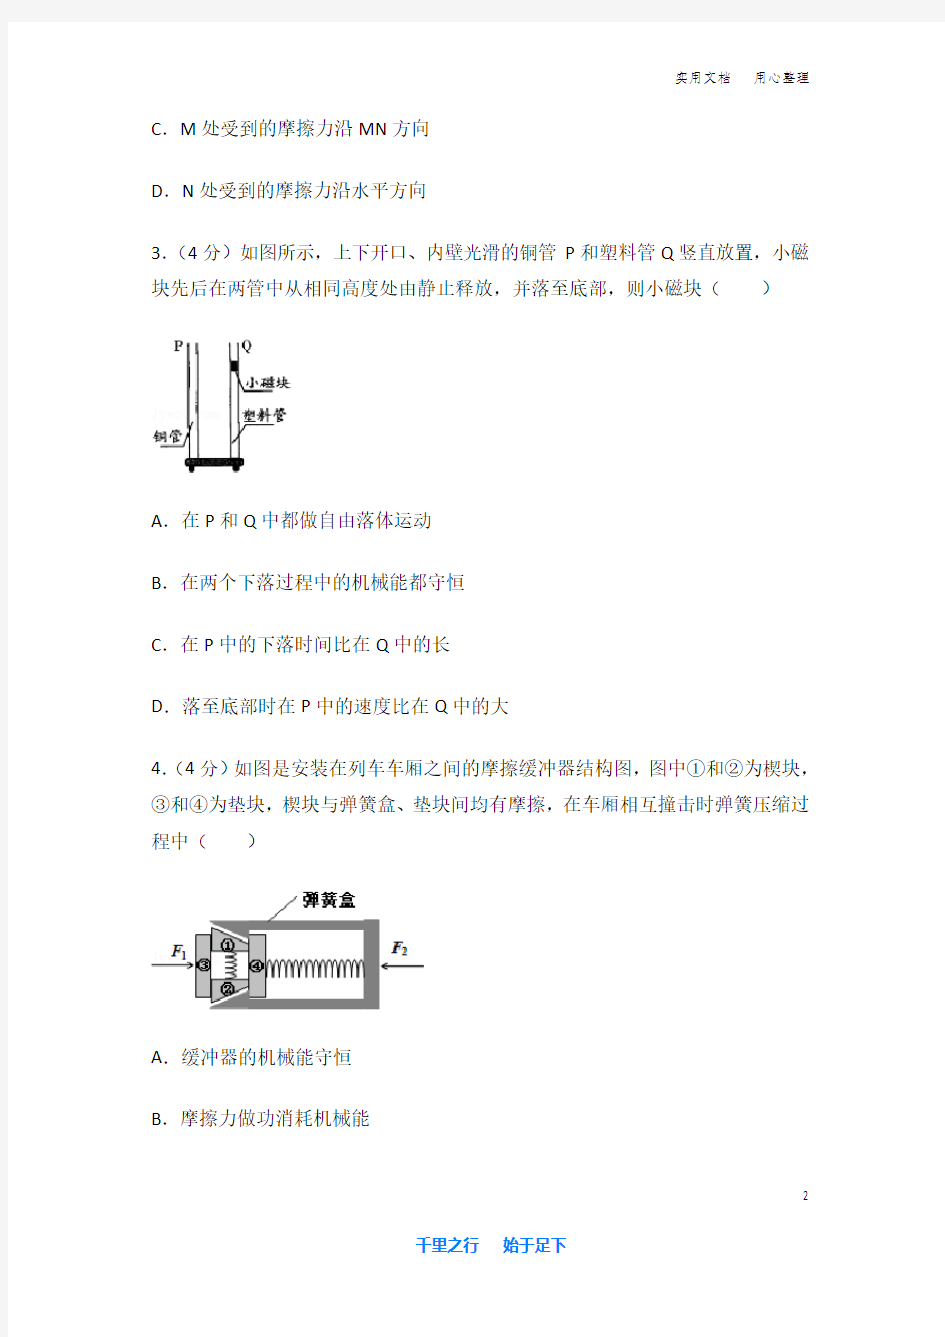 2014年 广东省 高考物理 试卷及解析